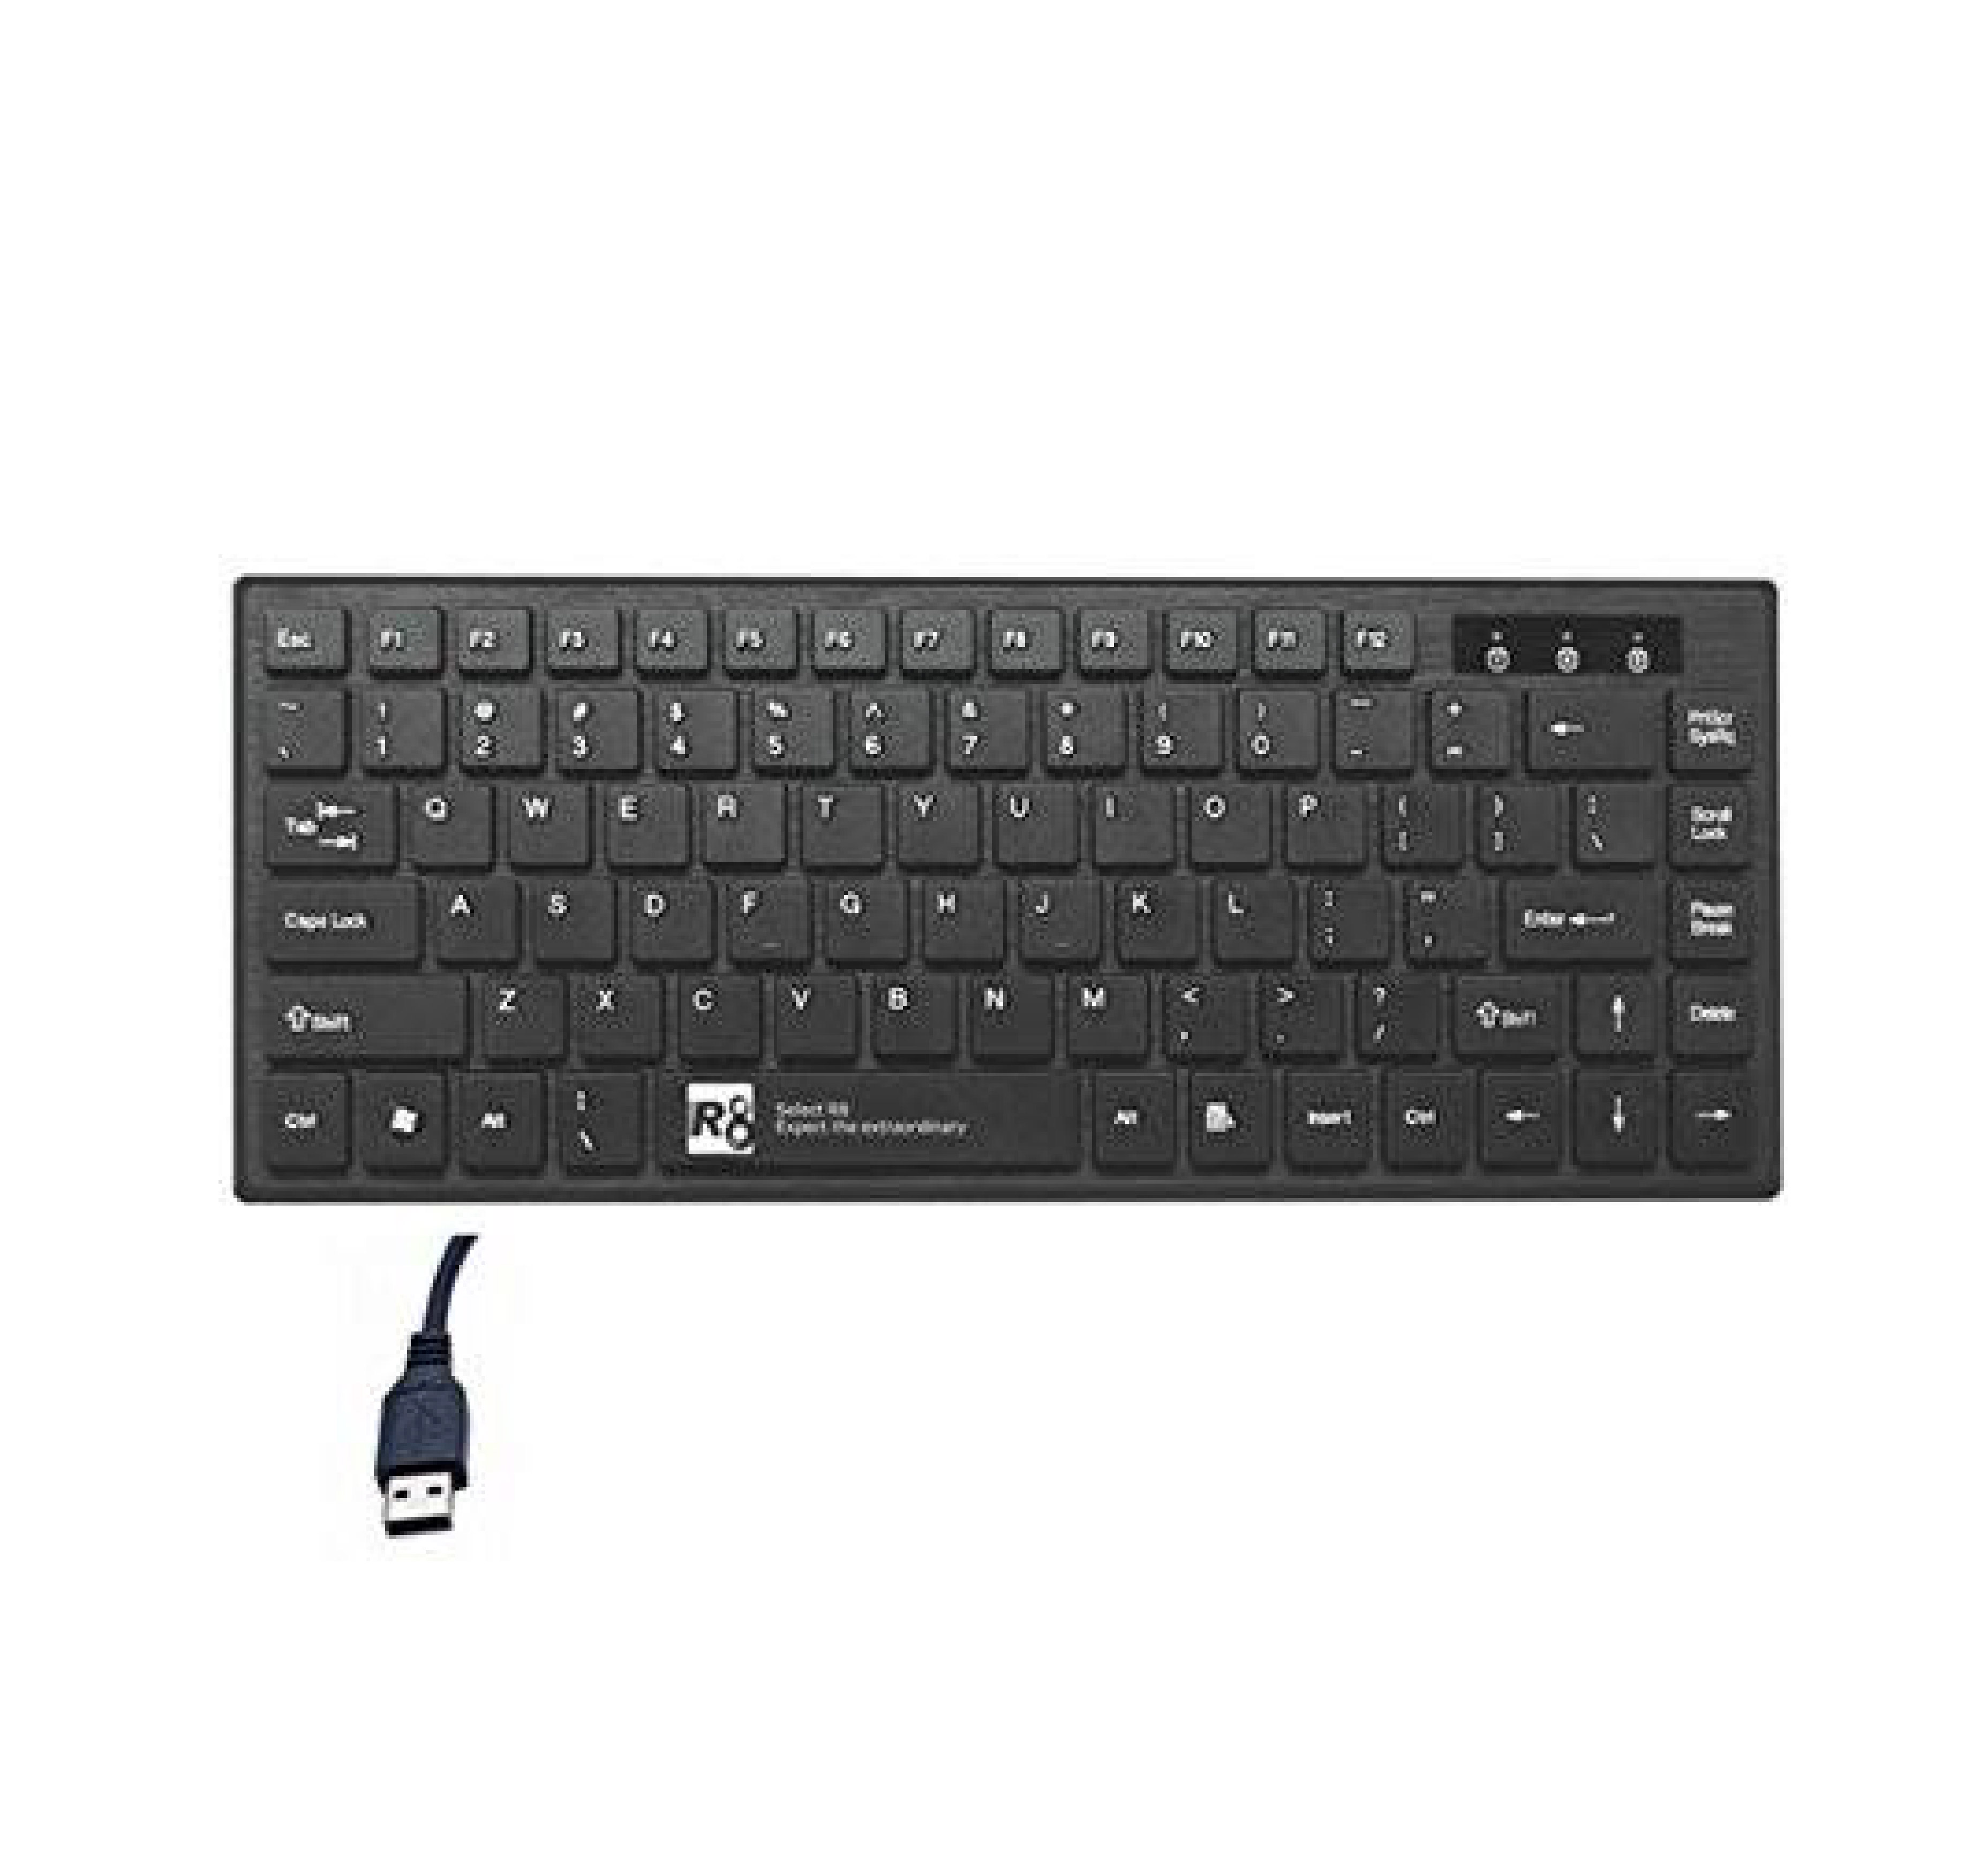 R8 1812 Keyboard